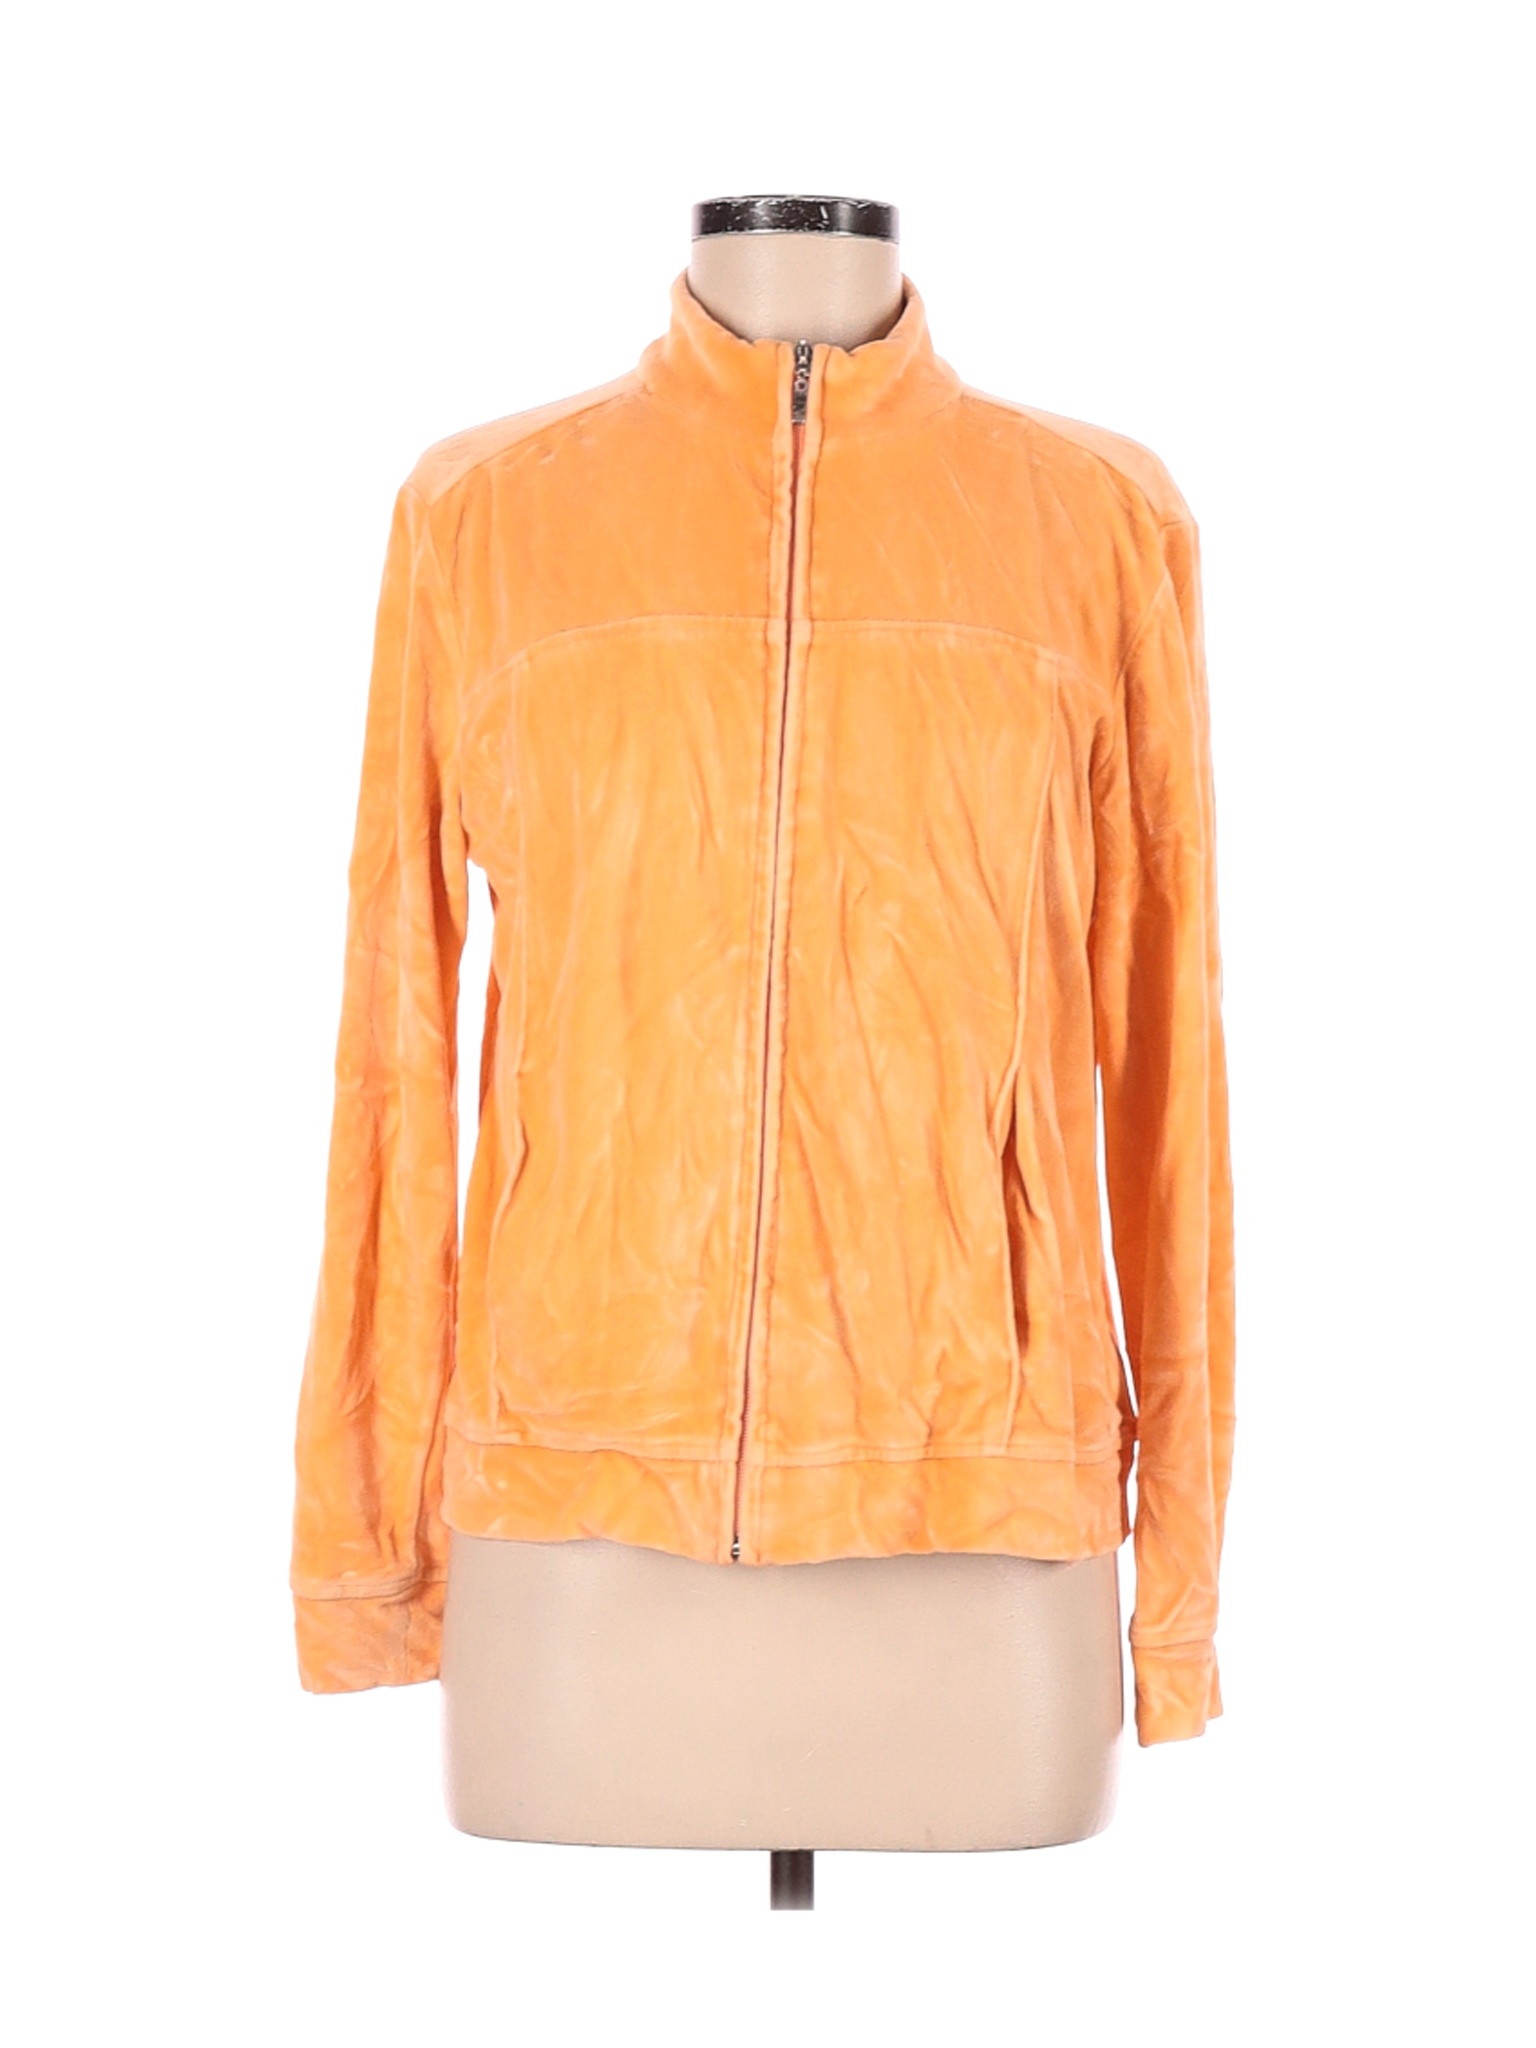 Talbots Women Orange Track Jacket M | eBay